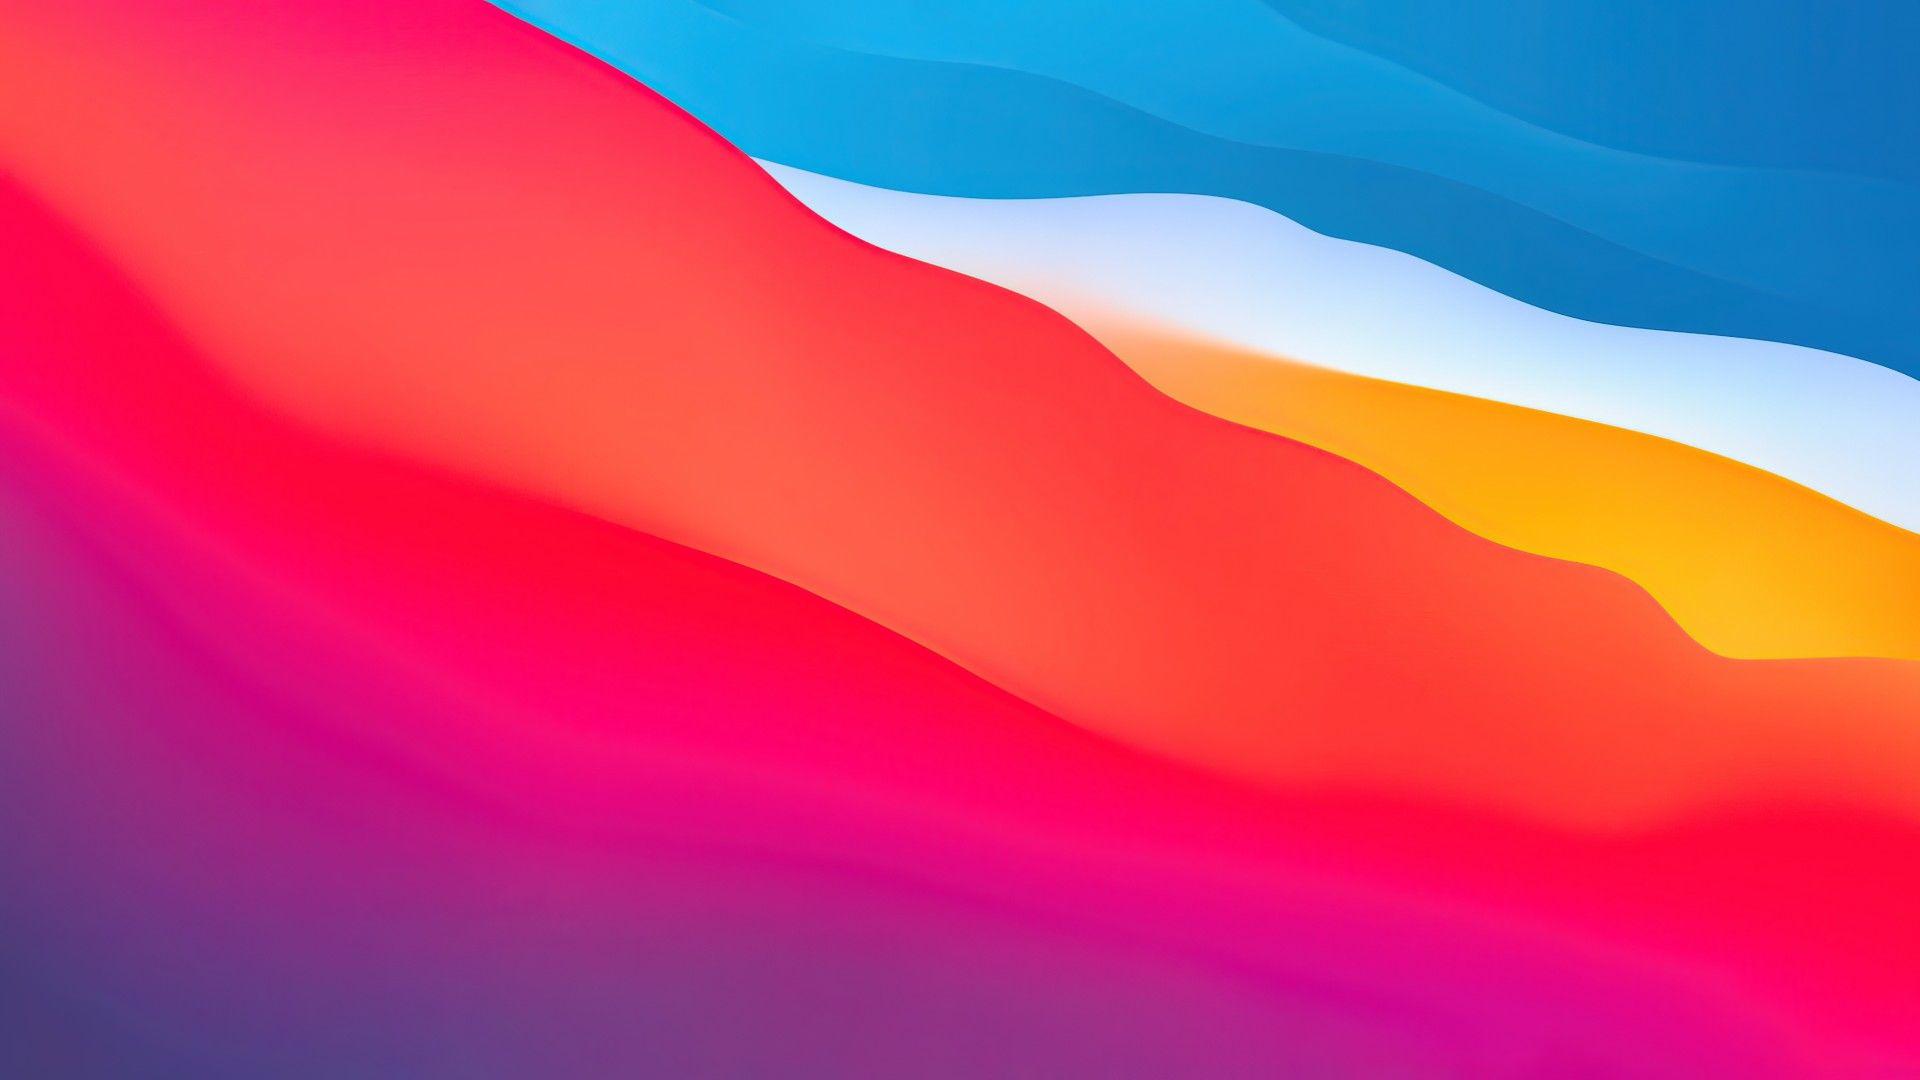 Macbook 2020 Wallpapers - Top Free Macbook 2020 ...